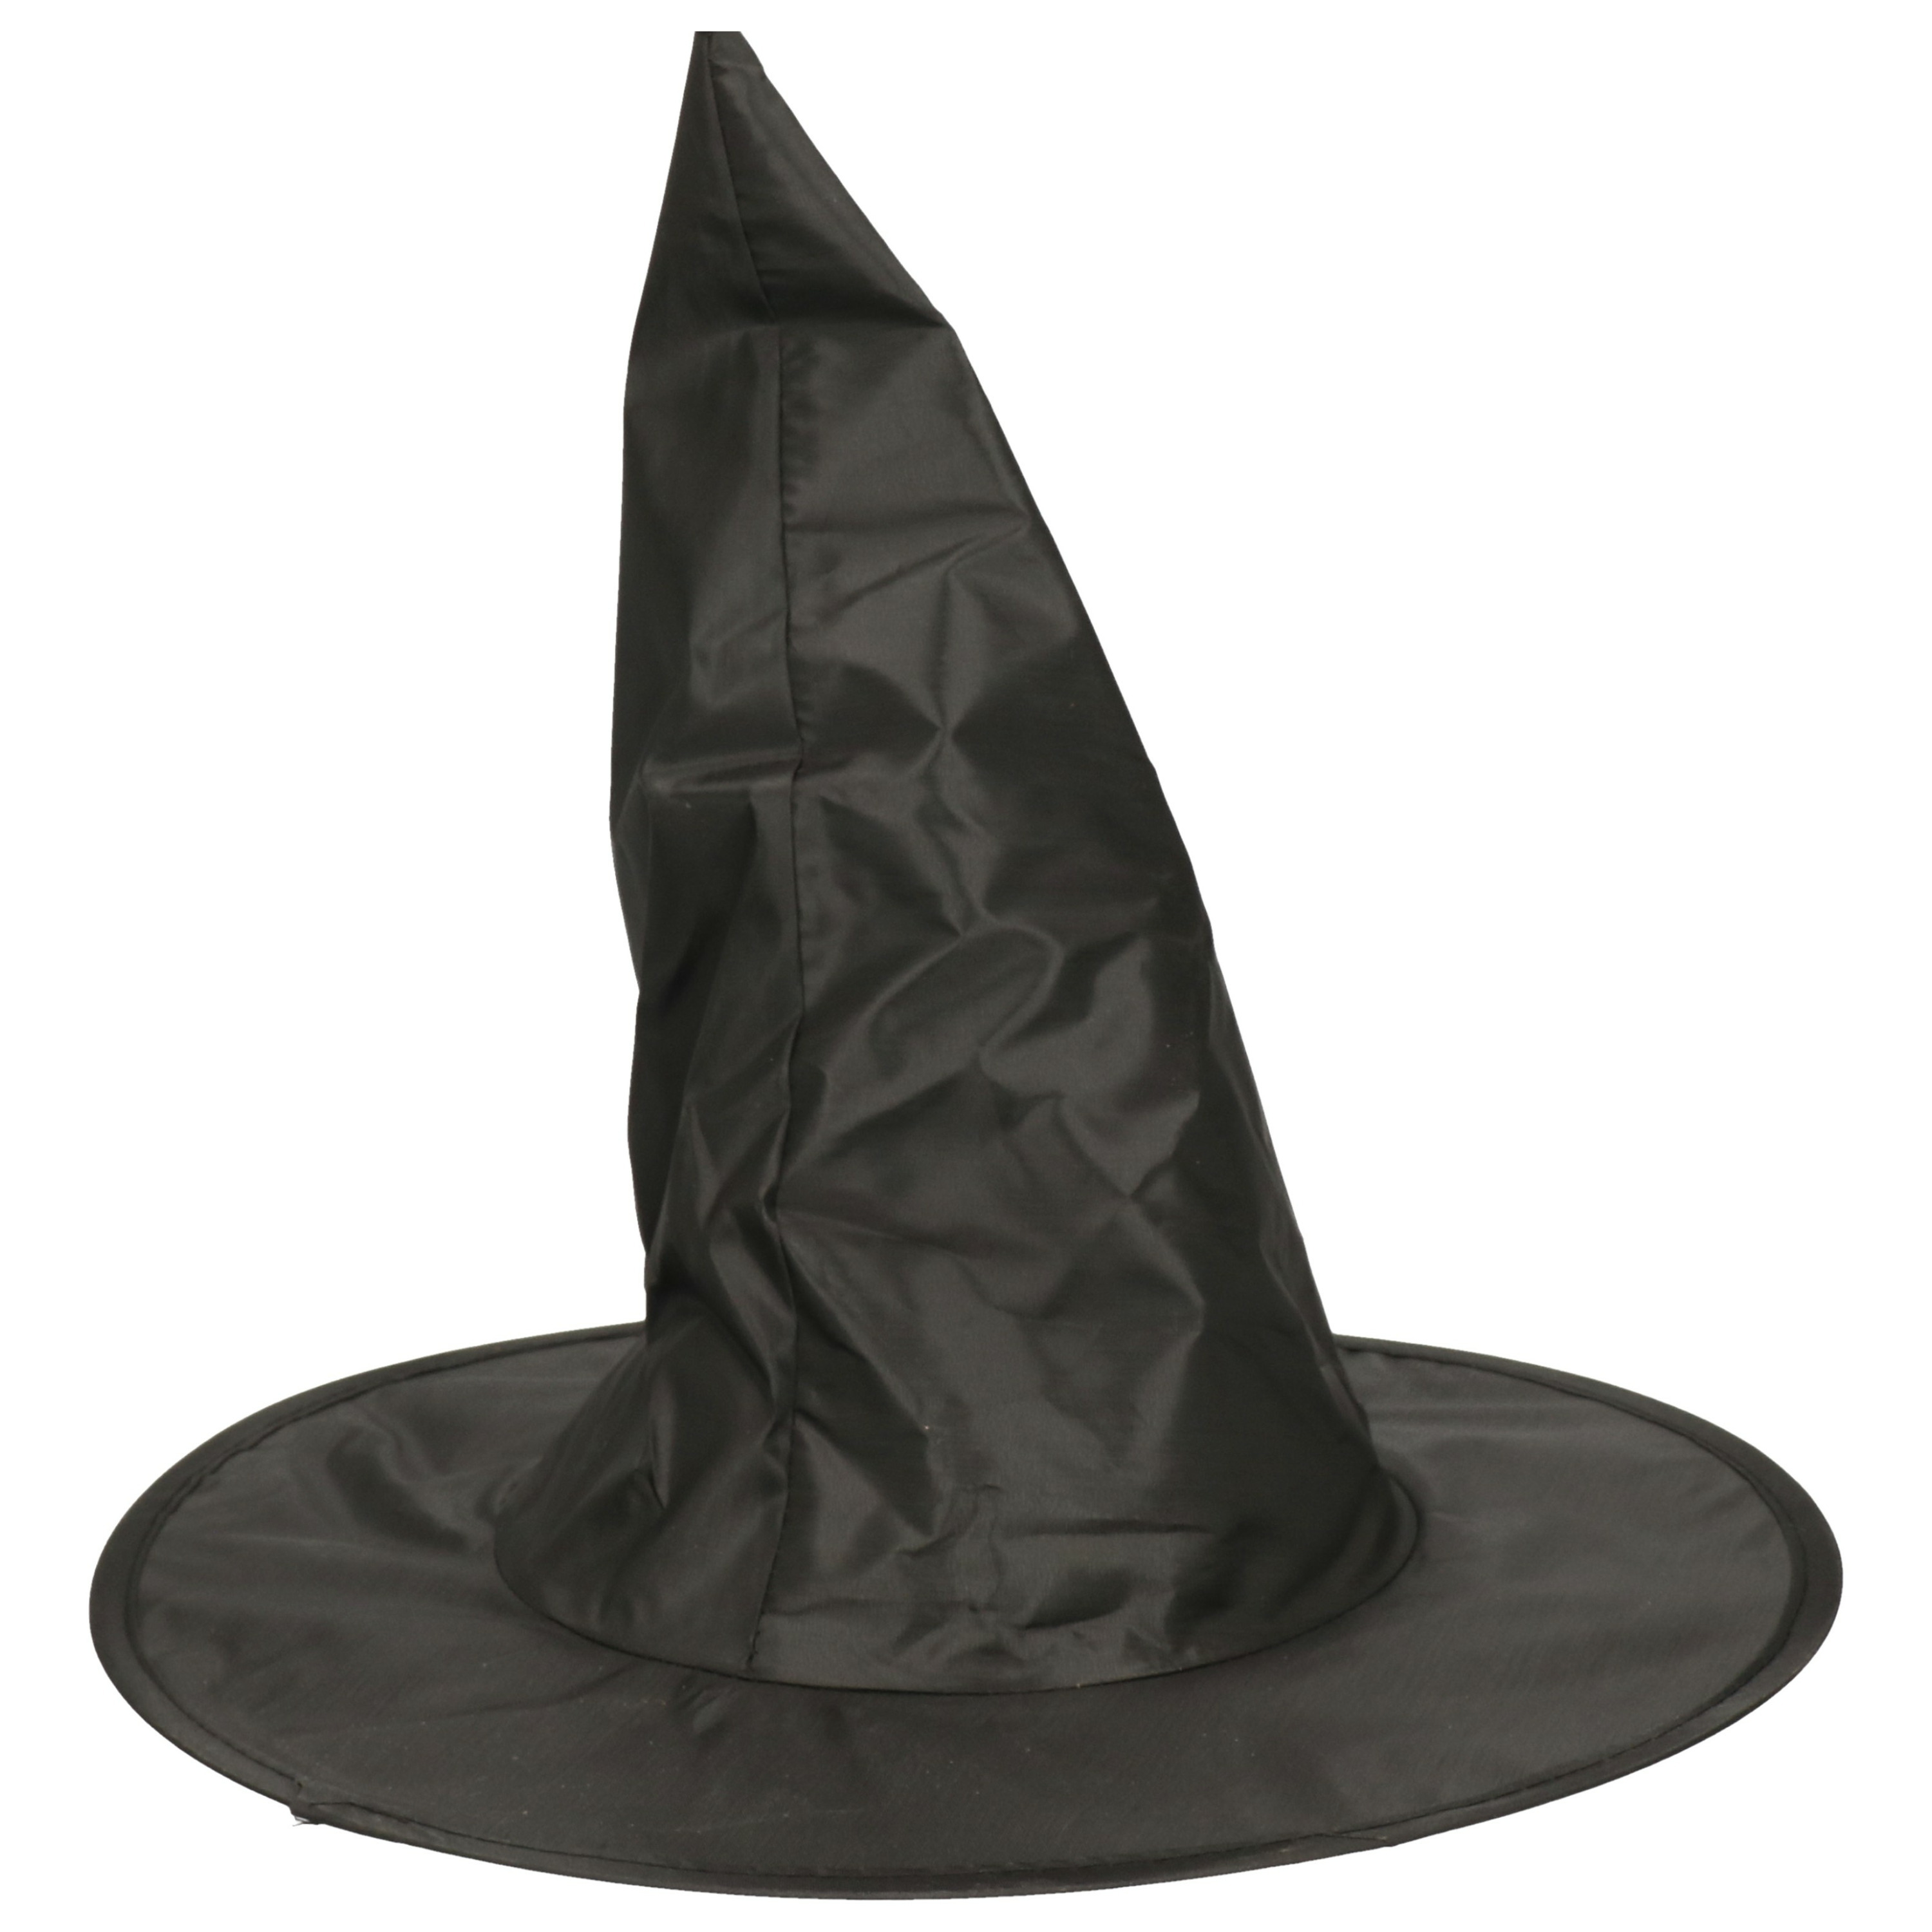 Verkleed heksenhoed - zwart - voor volwassenen - Halloween hoofddeksels